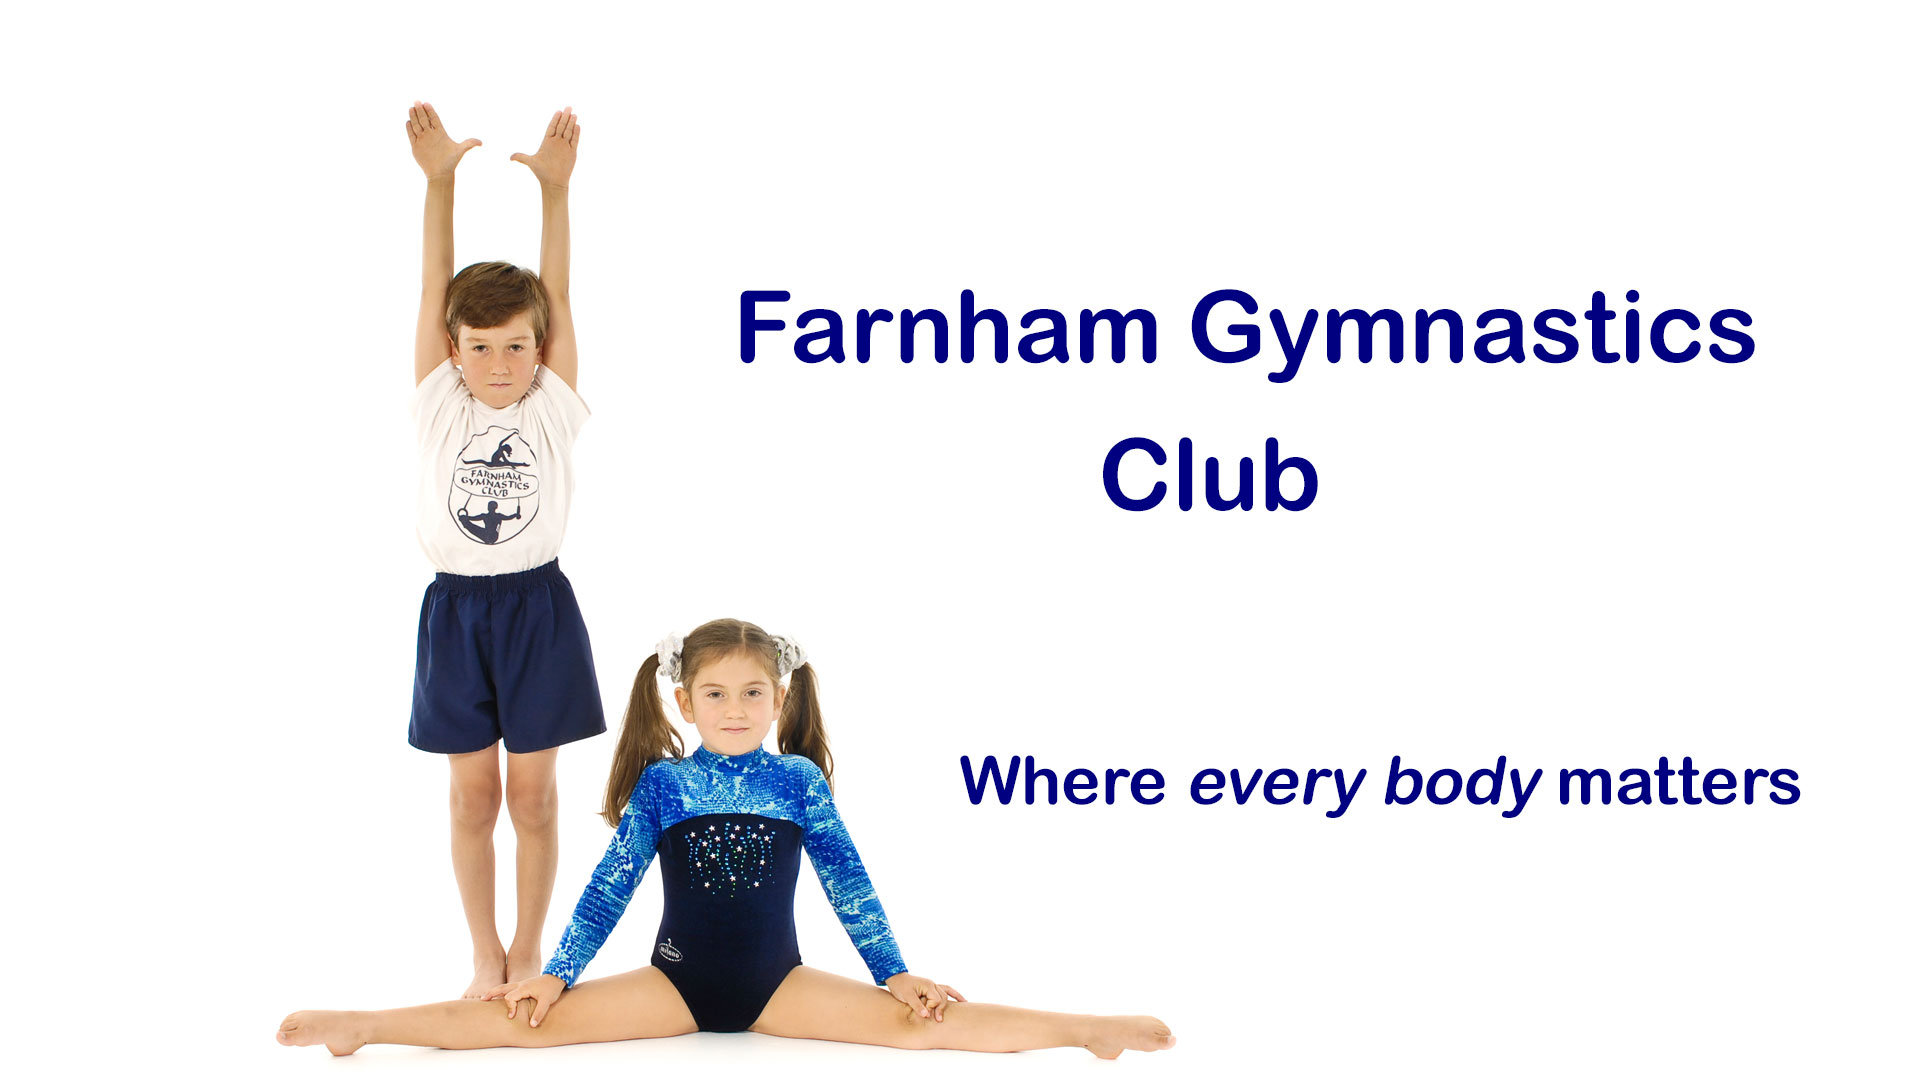 Farnham Gymnastics Club